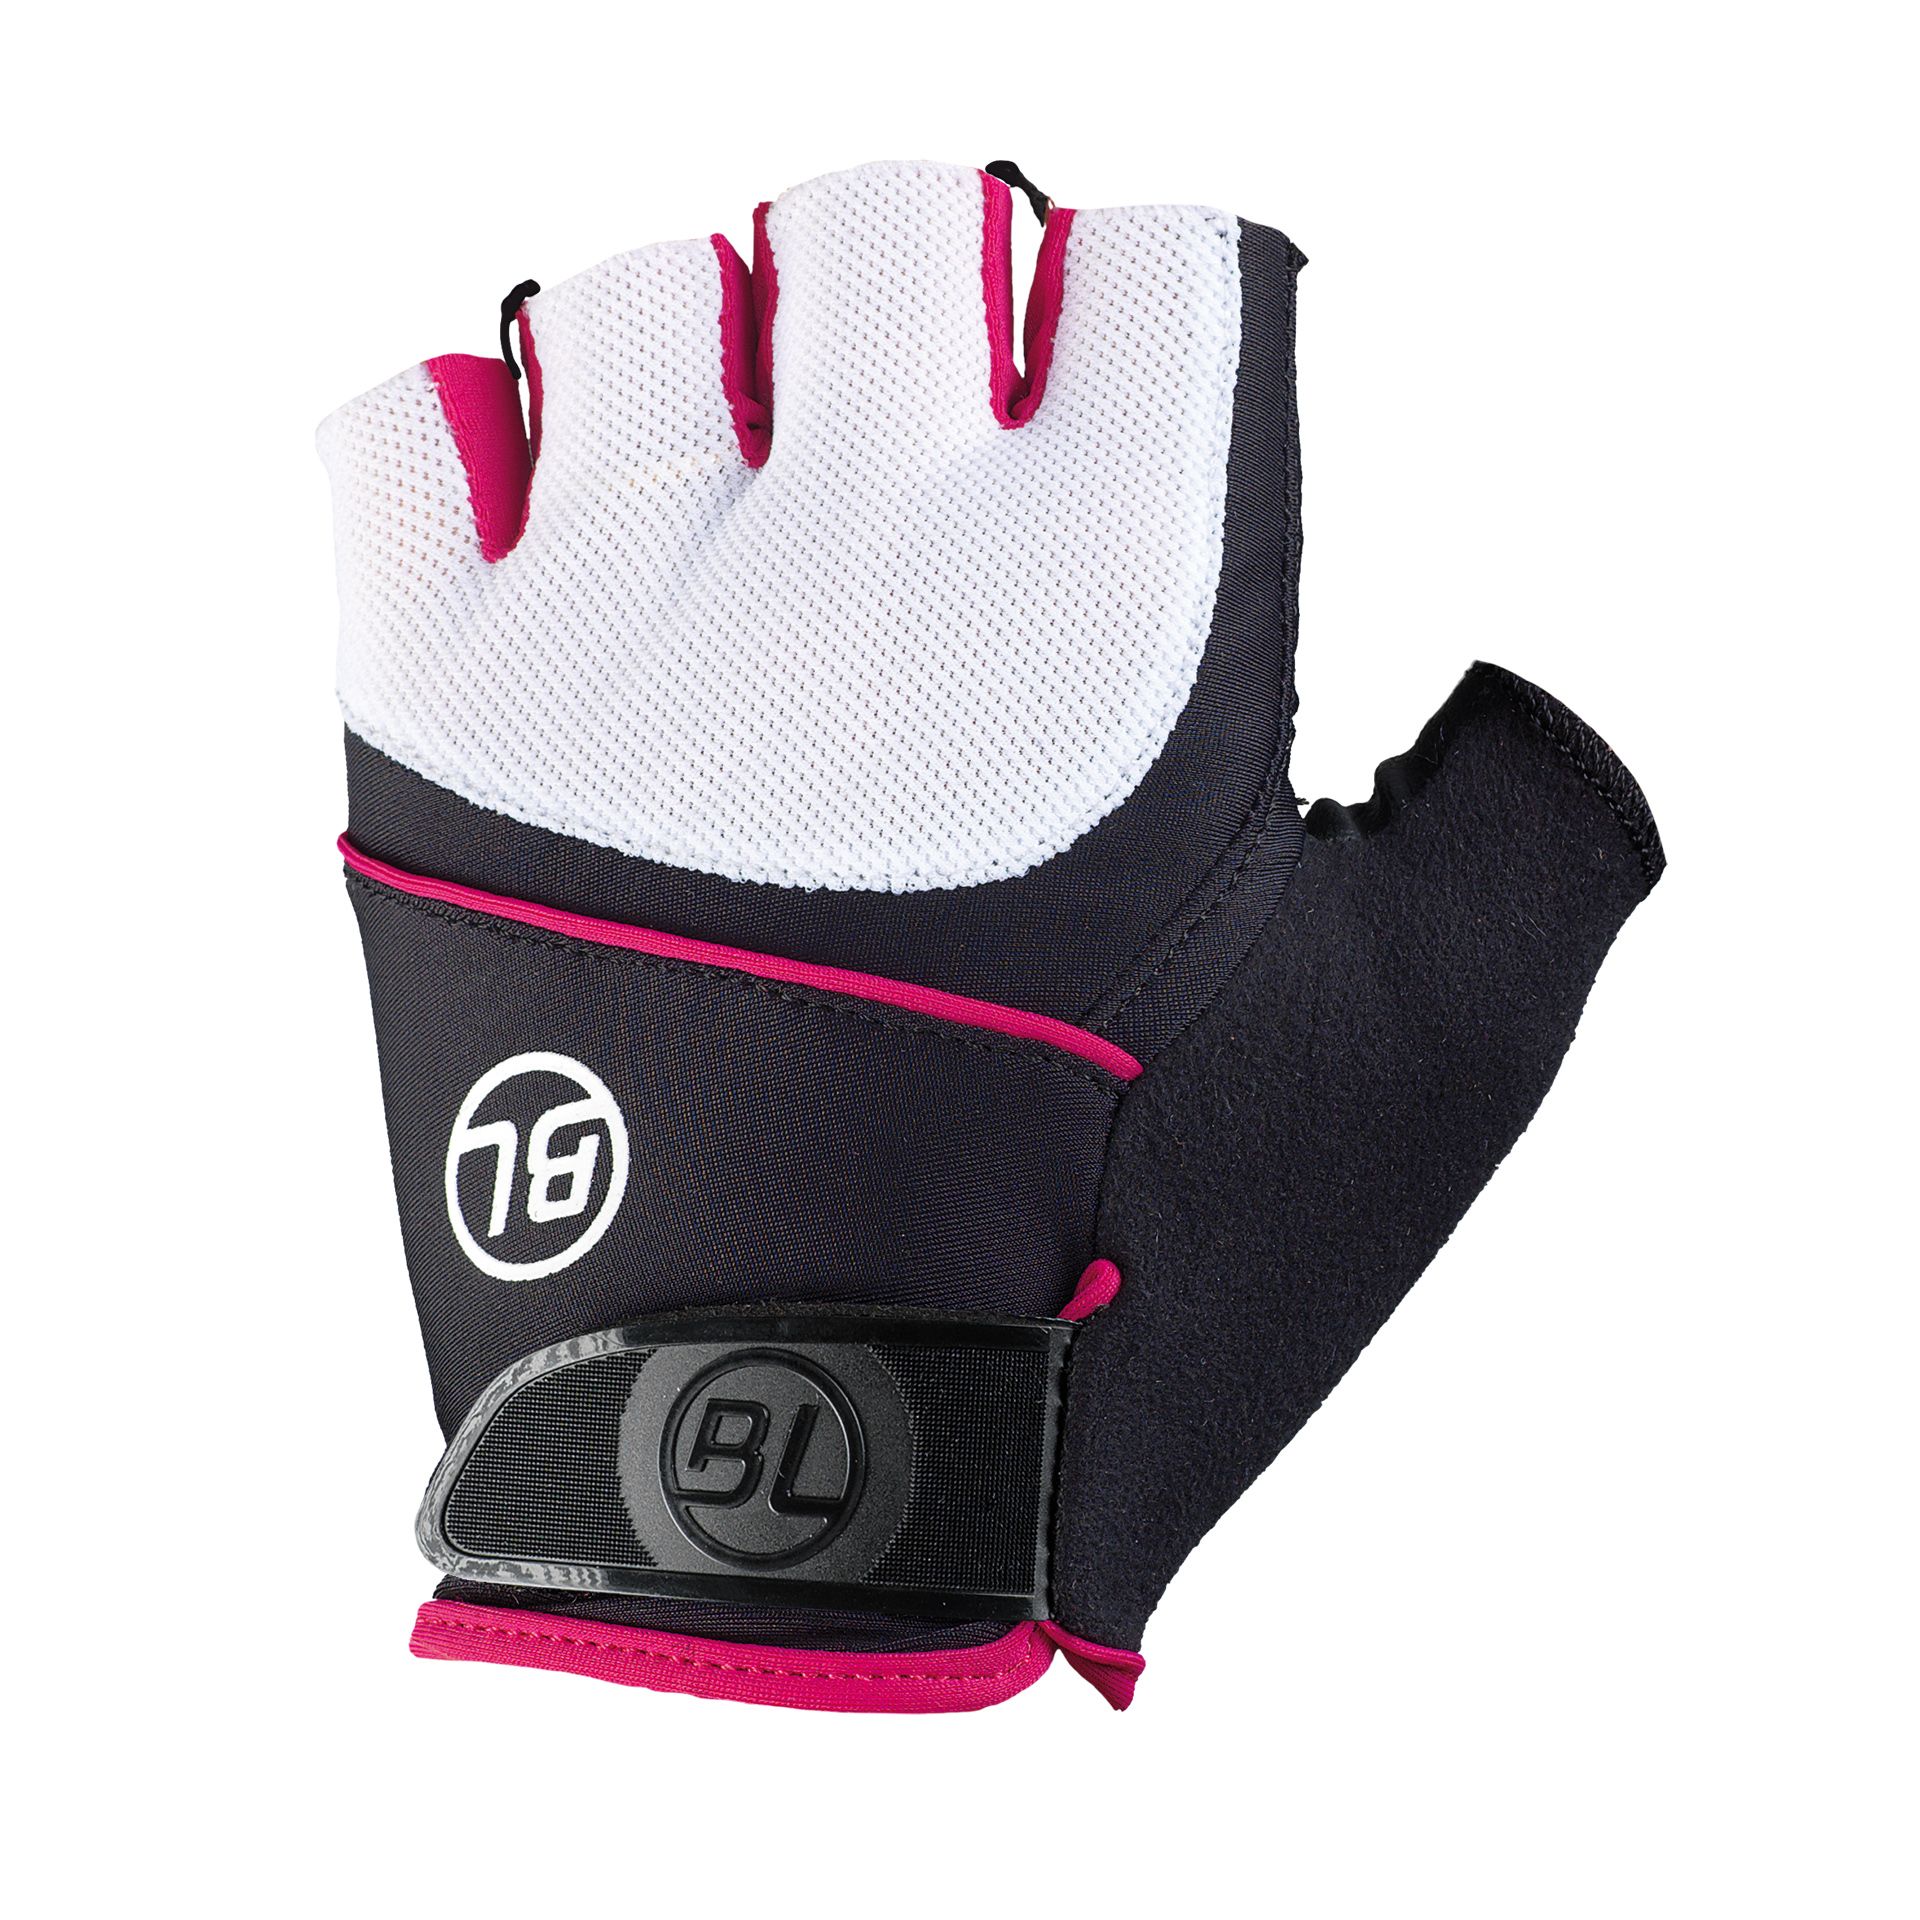 Перчатки Bicycle Line GUIDA, женские, без пальцев, черно-бело-розовые, размер M